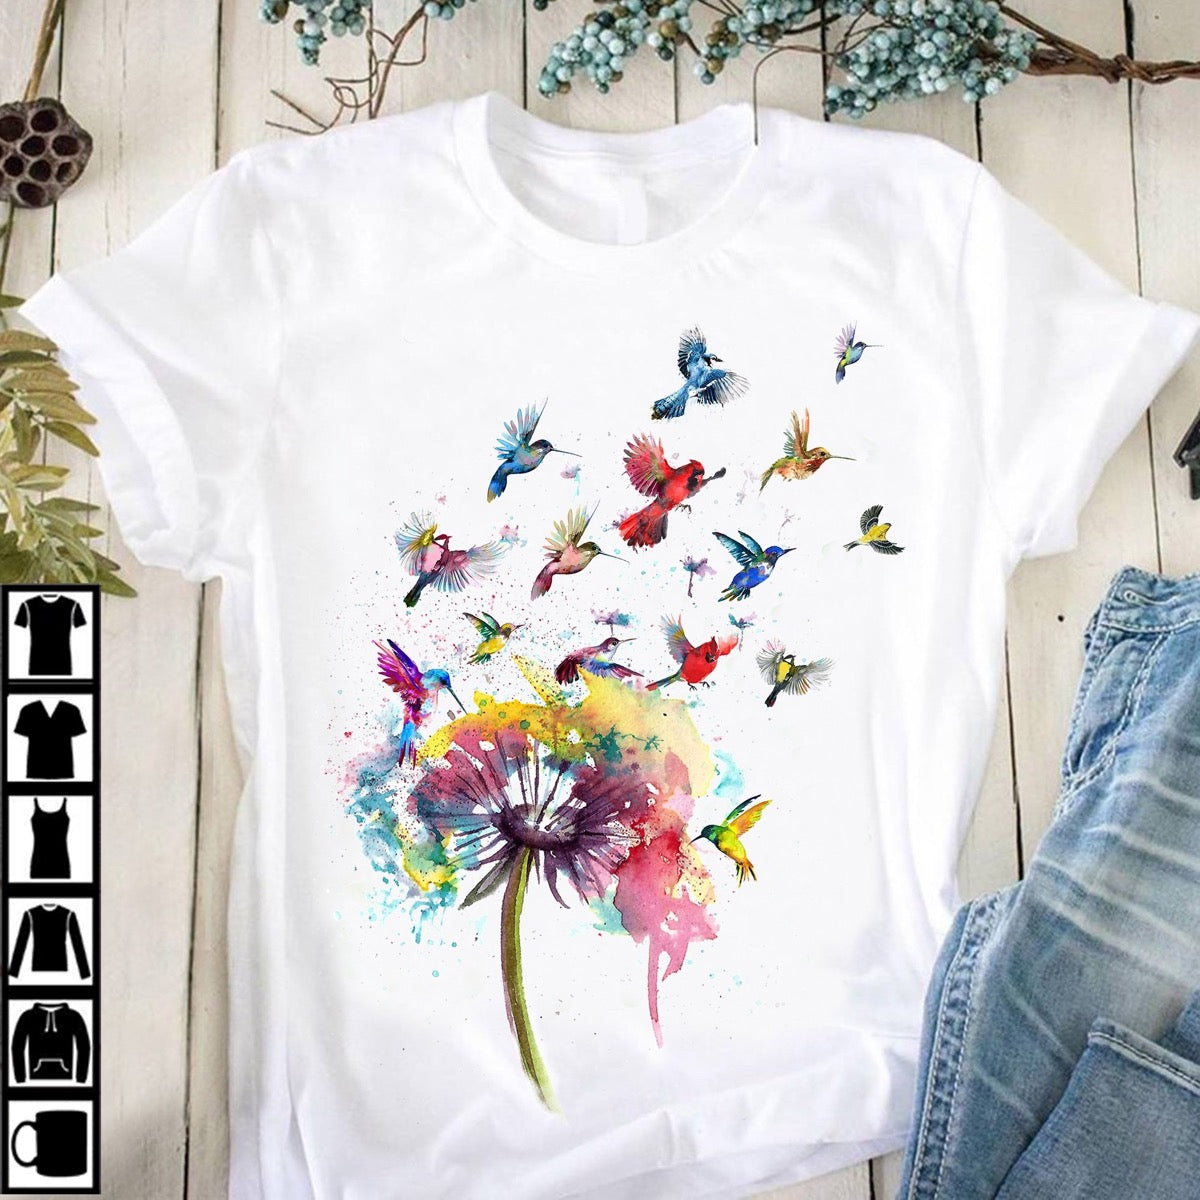 Free as a Bird T-shirt 33